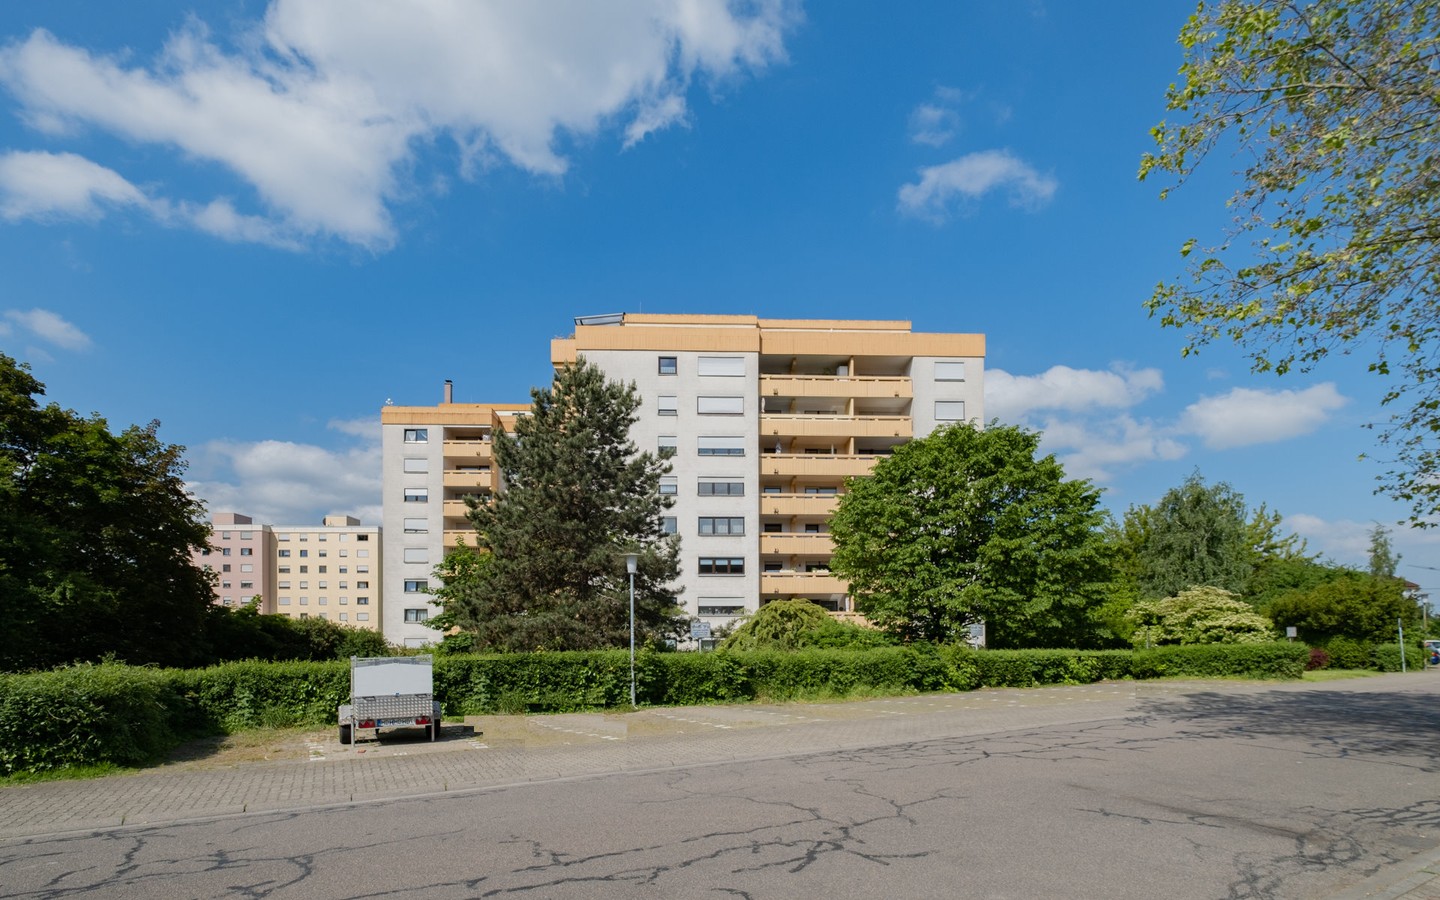 Ansicht - Kapitalanlage in Leimen: vermietete 2-Zimmer-Wohnung (barrierefrei) mit Loggia und TG-Stellplatz